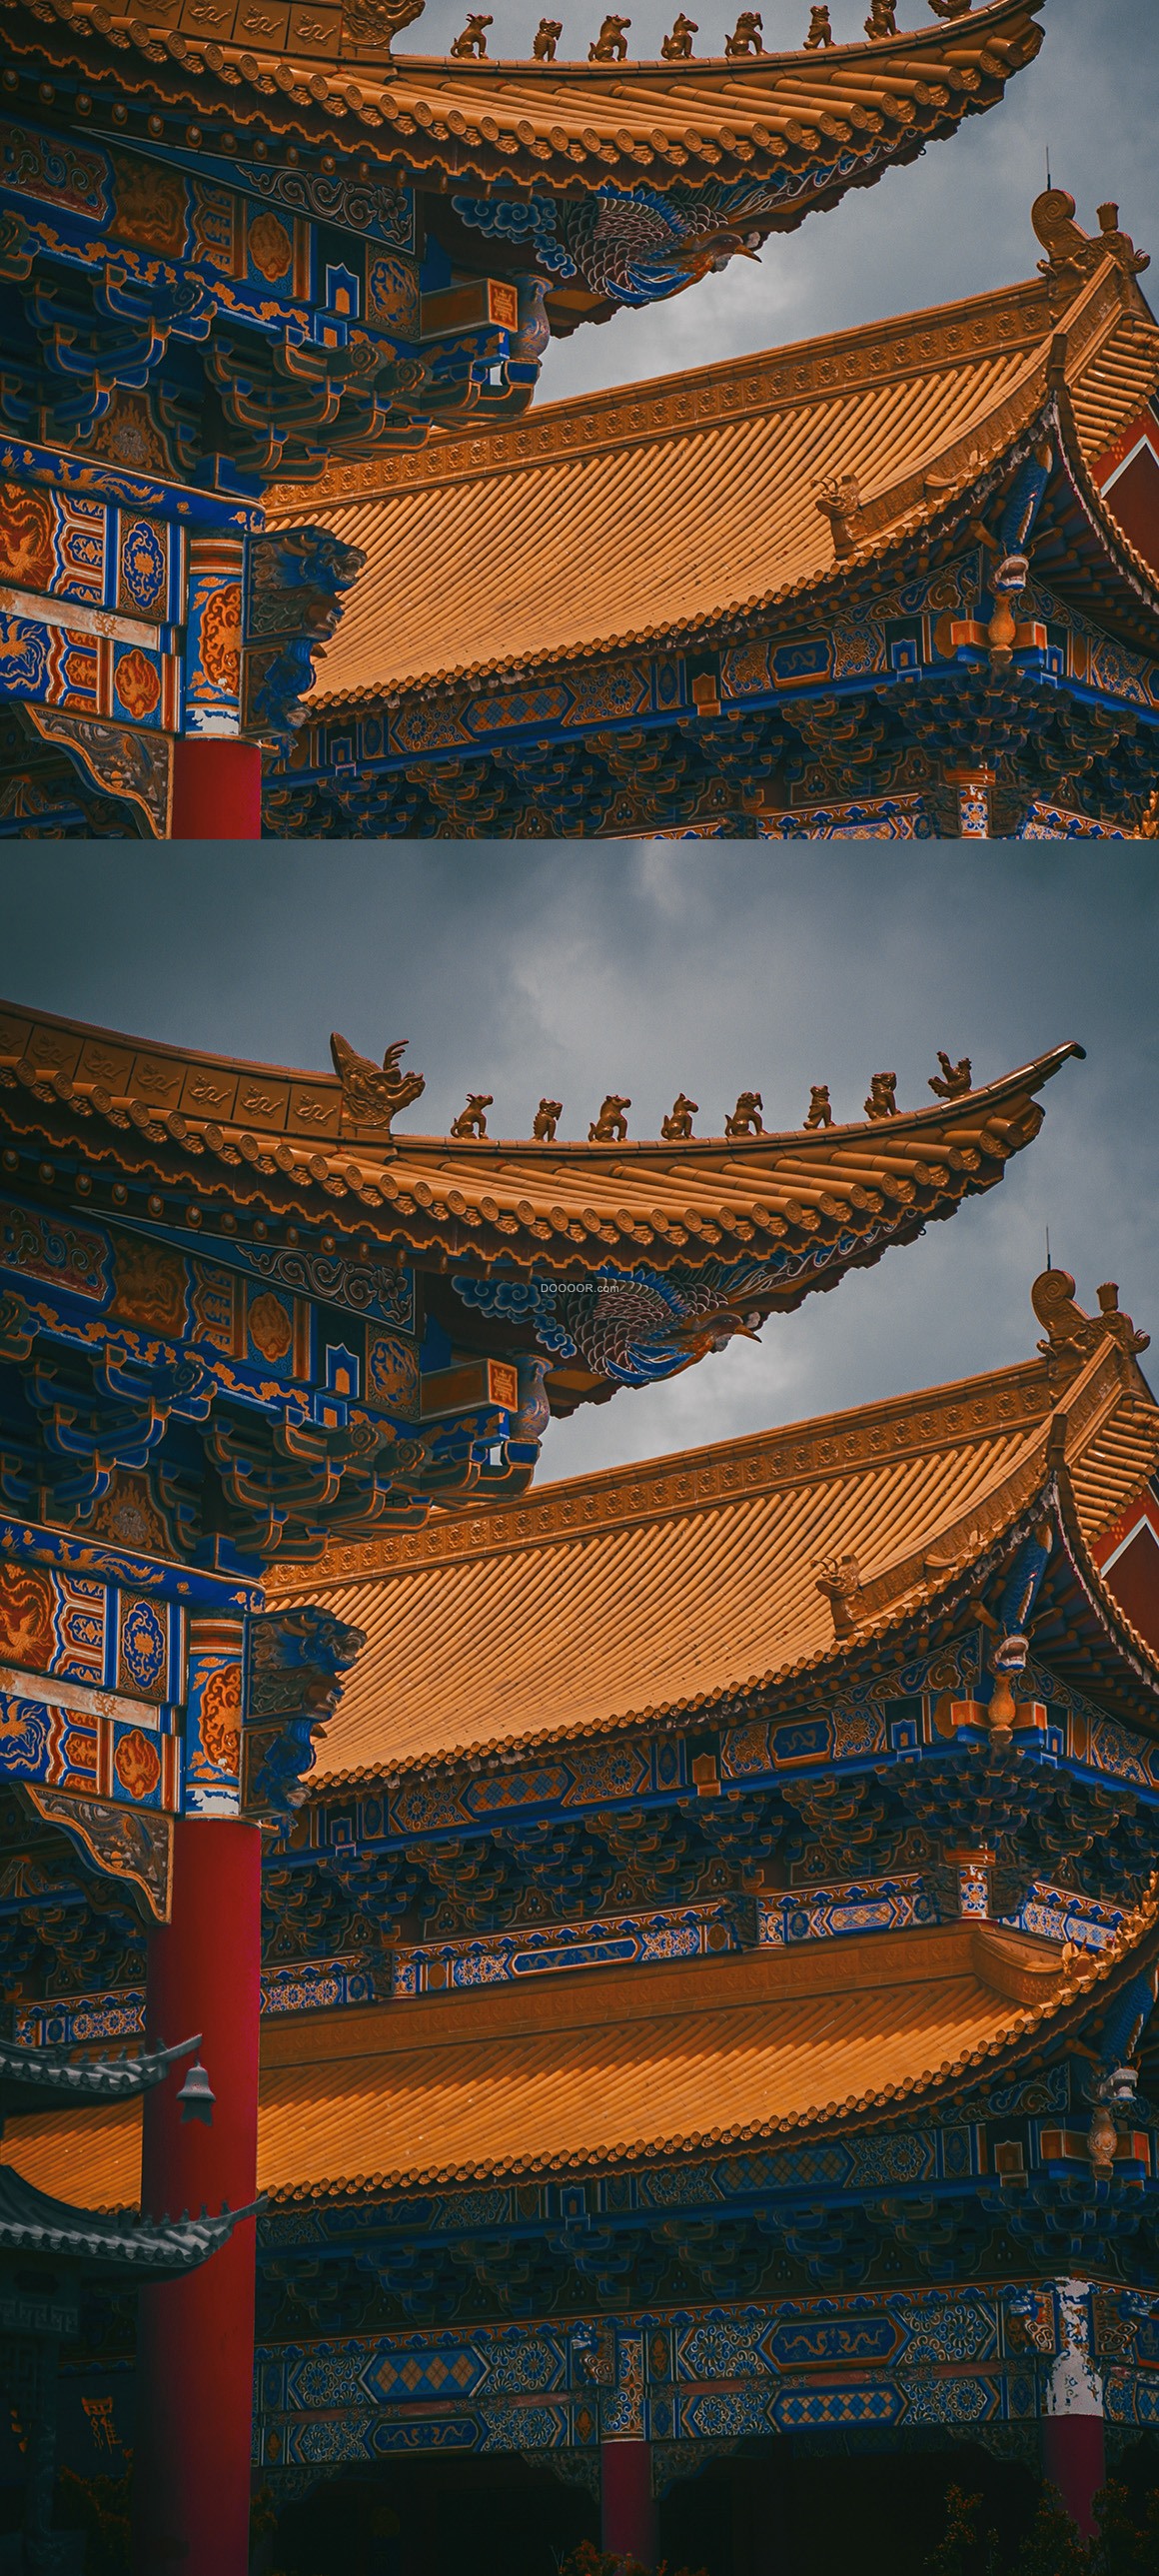 中国古代风格建筑艺术作品故宫雕栏画栋巧夺天工建筑素材设计